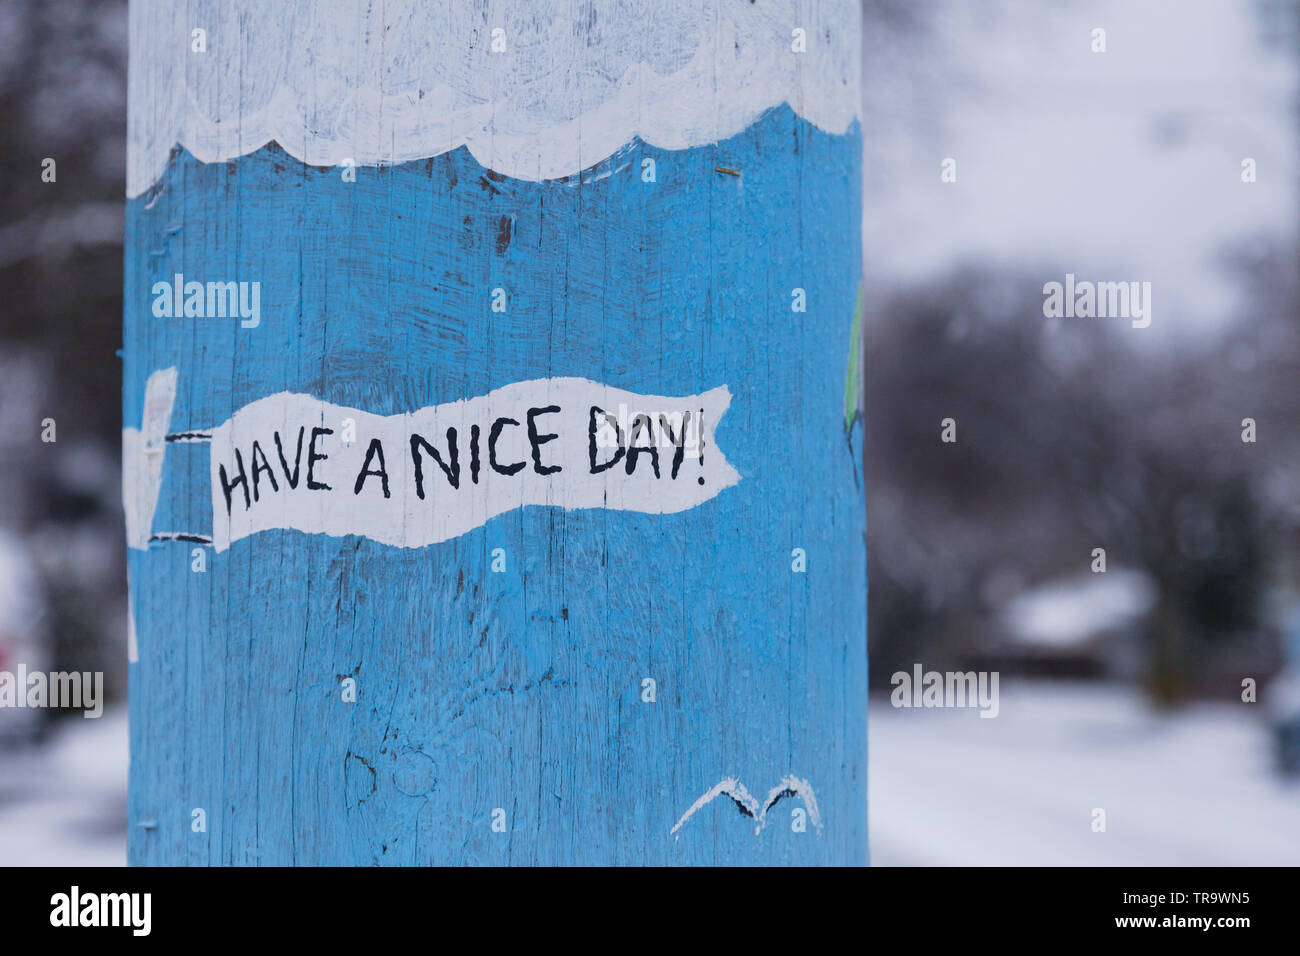 "Einen schönen Tag" auf telefonmast gemalt, Victoria BC. Stockfoto